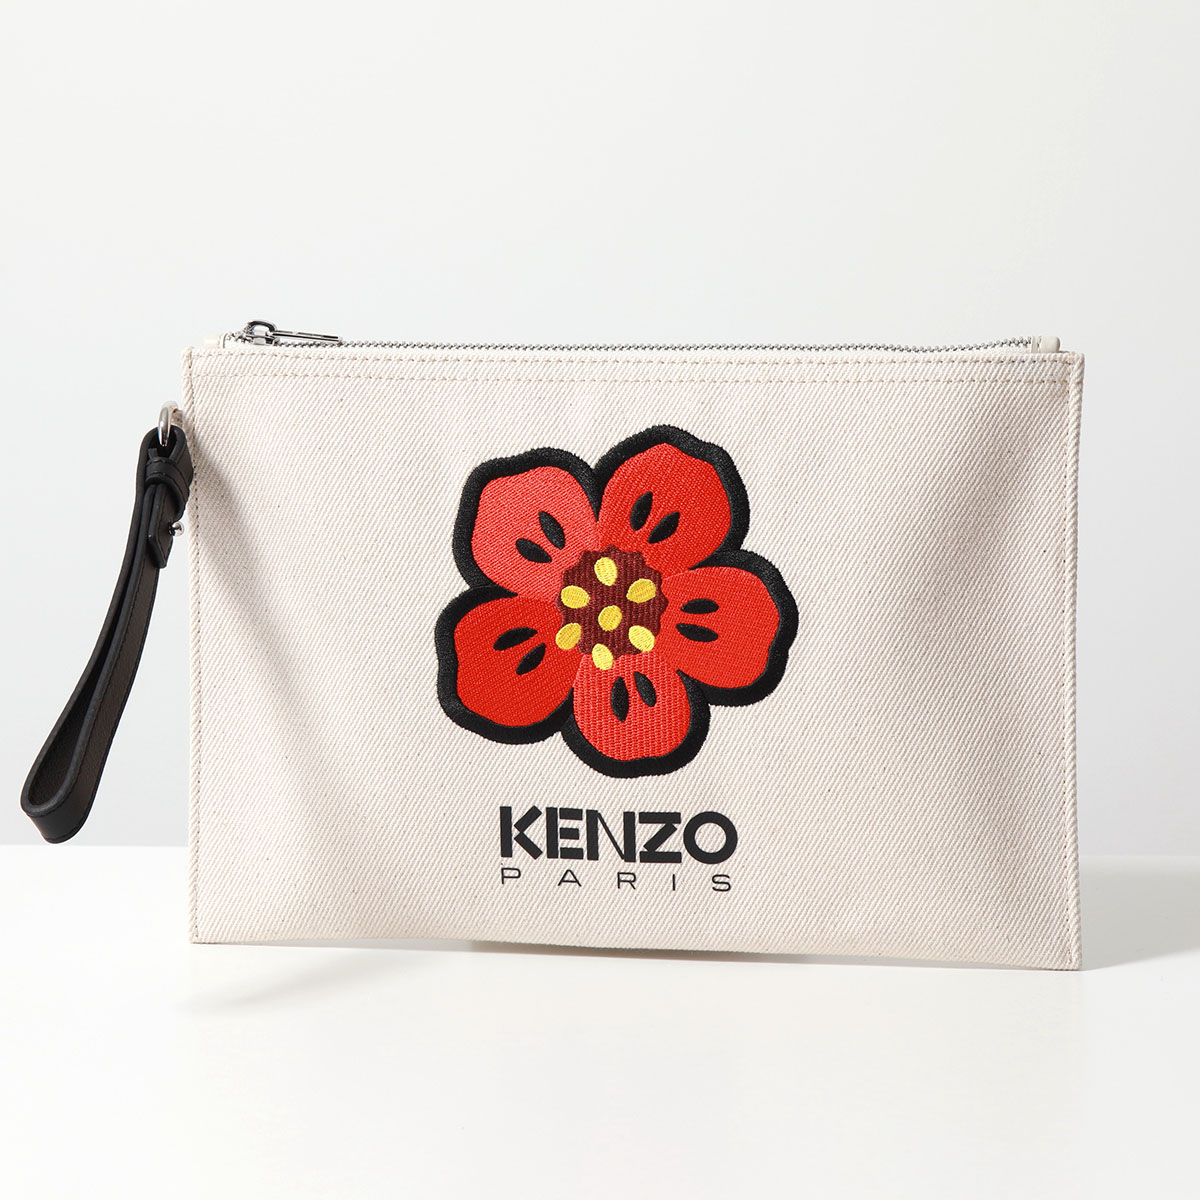 KENZO クラッチバッグ BOKE FLOWER ラージ パース PFD65PM902F34 メン...